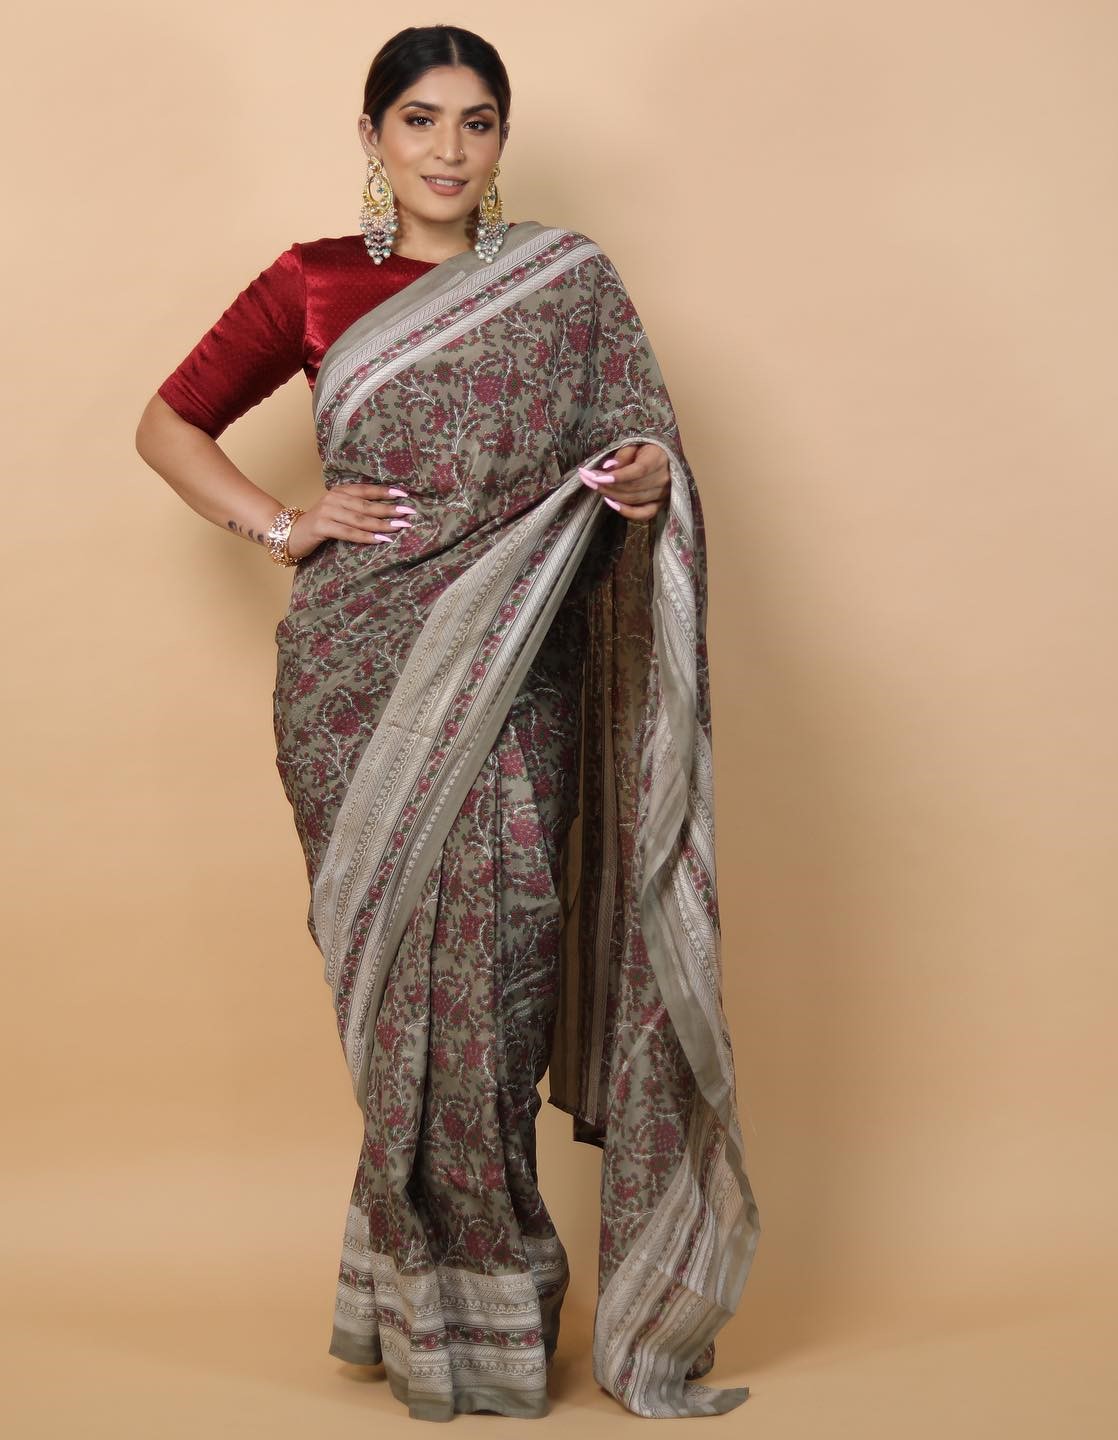 Shreya Jain Sophisticated Look In Beige Printed Saree &  Maroon Silk Blouse With Sleek Hair Exclusive Outfits & Looks